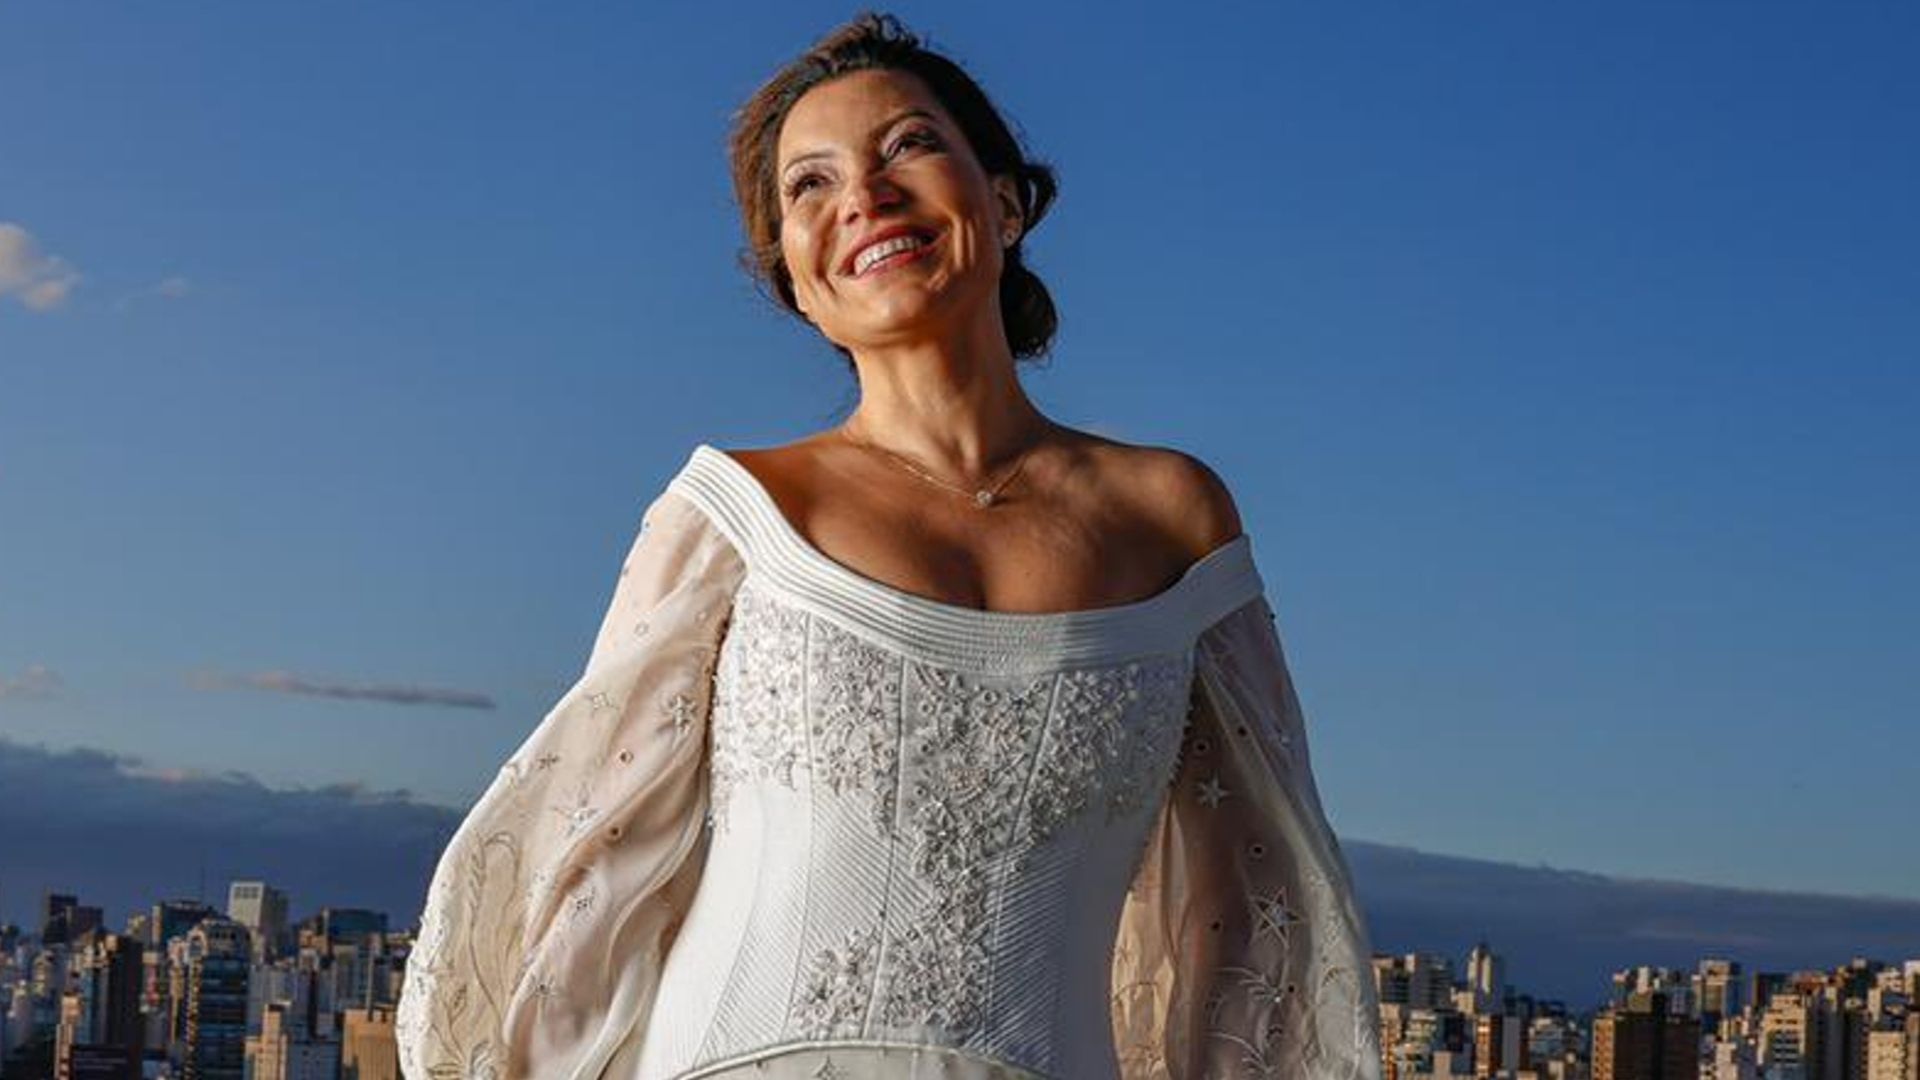 Foto de Janja sorrindo com o vestido de noiva feito por bordadeiras do Seridó potiguar.